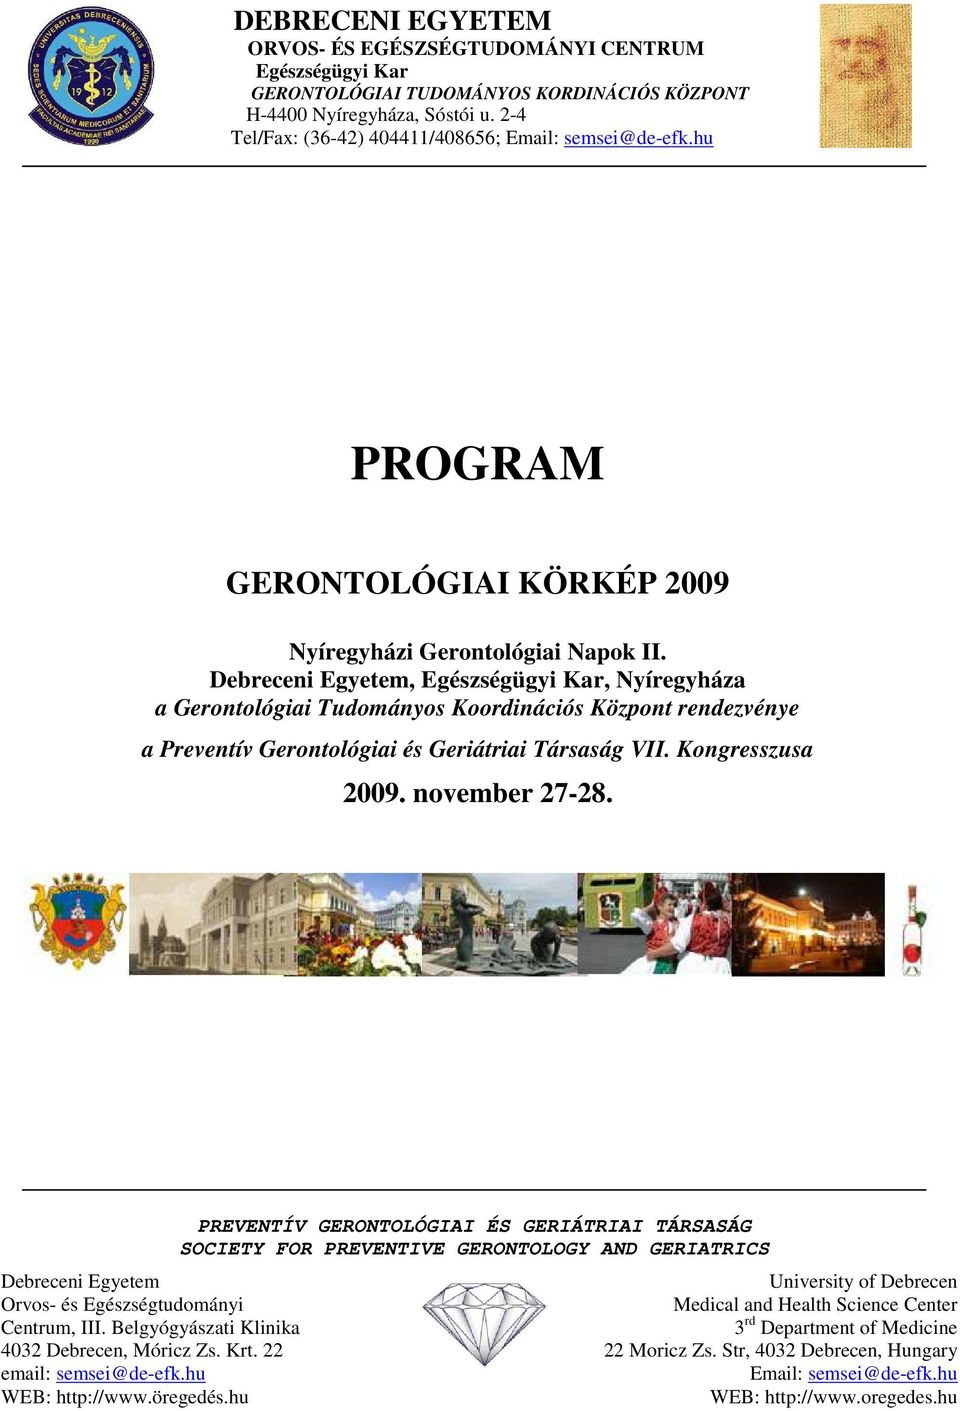 Debreceni Egyetem, Egészségügyi Kar, Nyíregyháza a Gerontológiai Tudományos Koordinációs Központ rendezvénye a Preventív Gerontológiai és Geriátriai Társaság VII. Kongresszusa 2009. november 27-28.